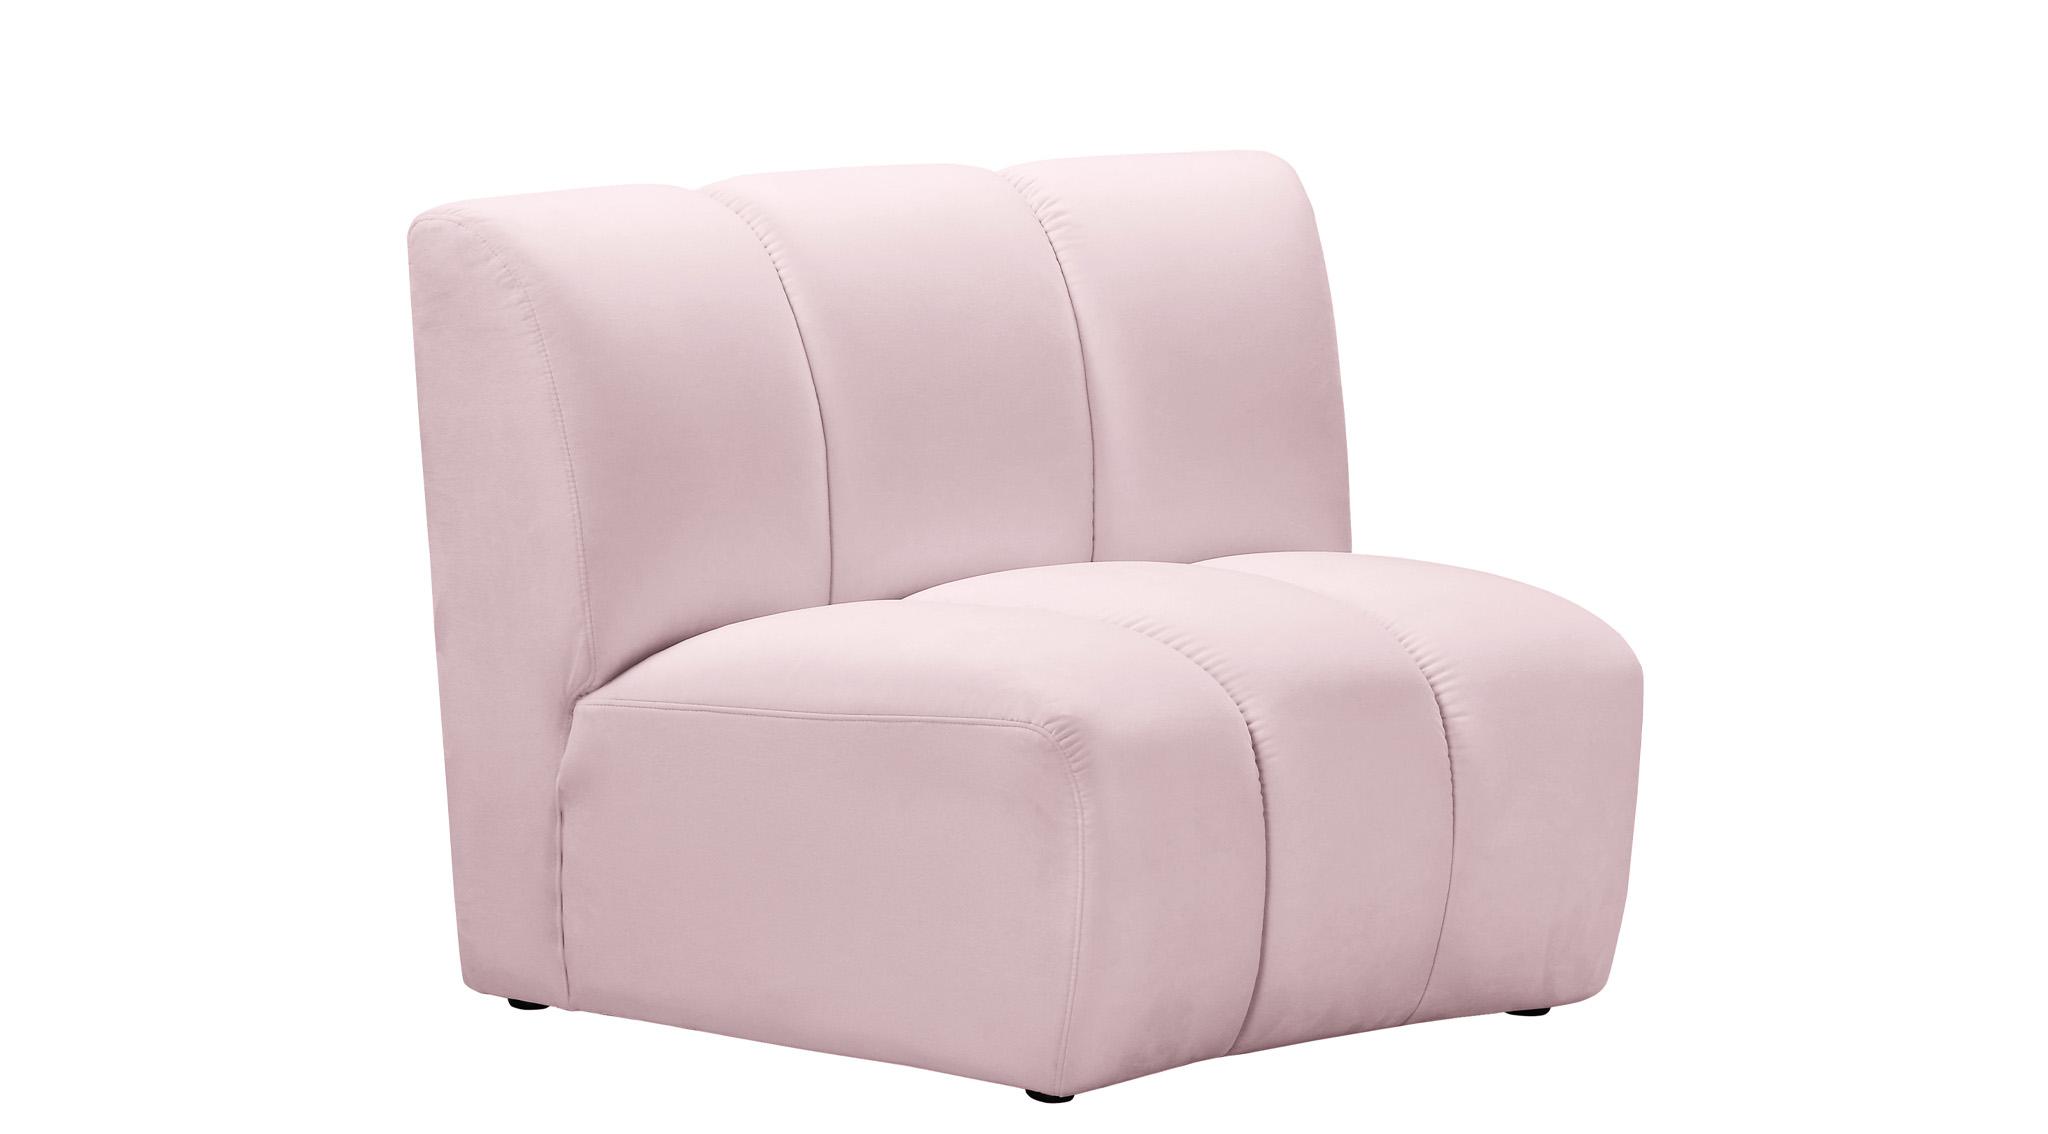 

    
638Pink-6PC Meridian Furniture Modular Sectional Sofa
